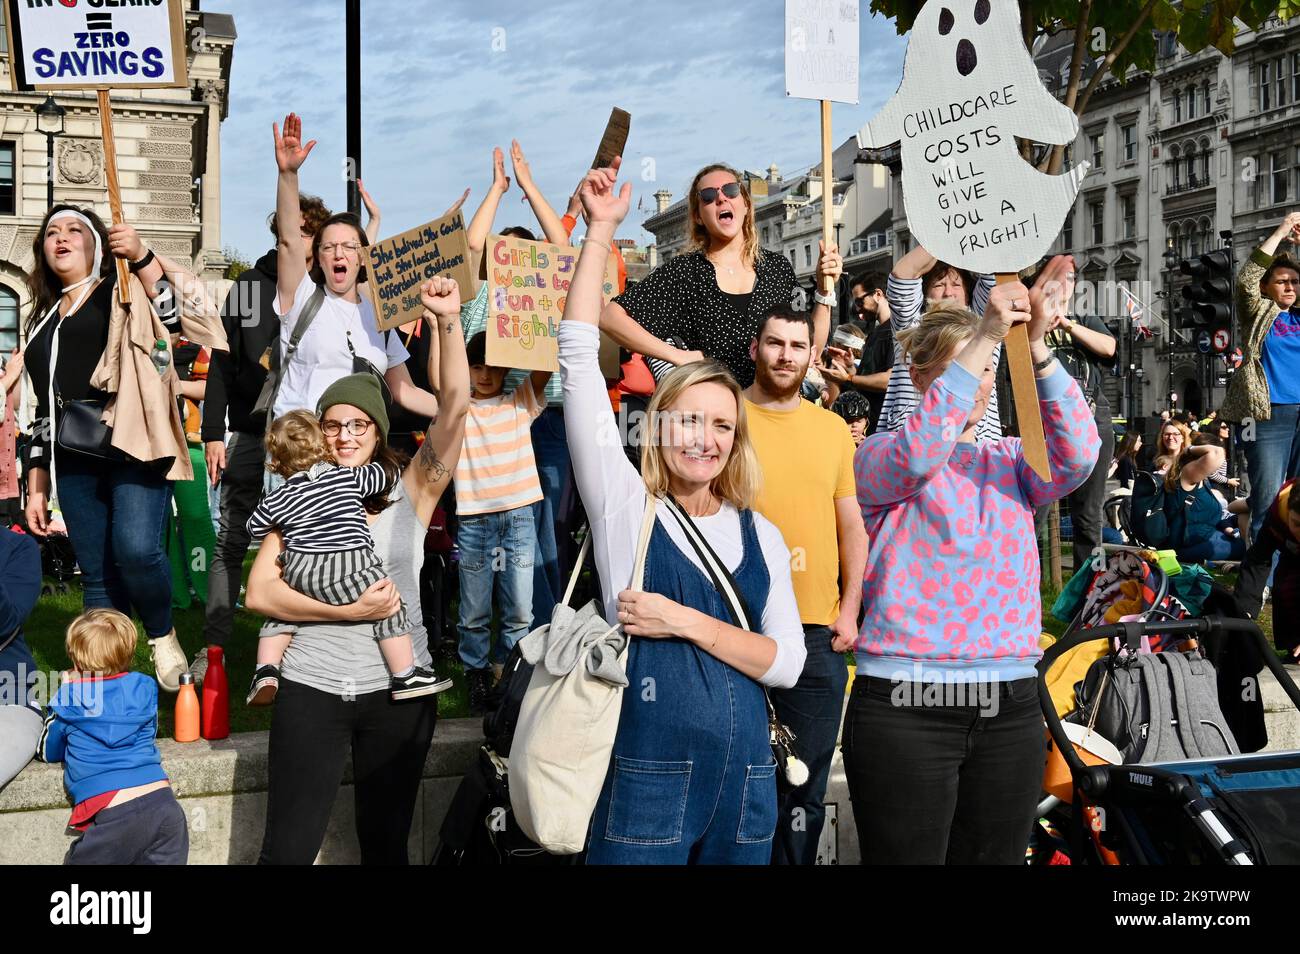 Mars des momies, une manifestation pour exiger une meilleure garde d'enfants, un congé parental et des policies de travail flexibles. Parliament Square, Westminster, Londres. ROYAUME-UNI Banque D'Images